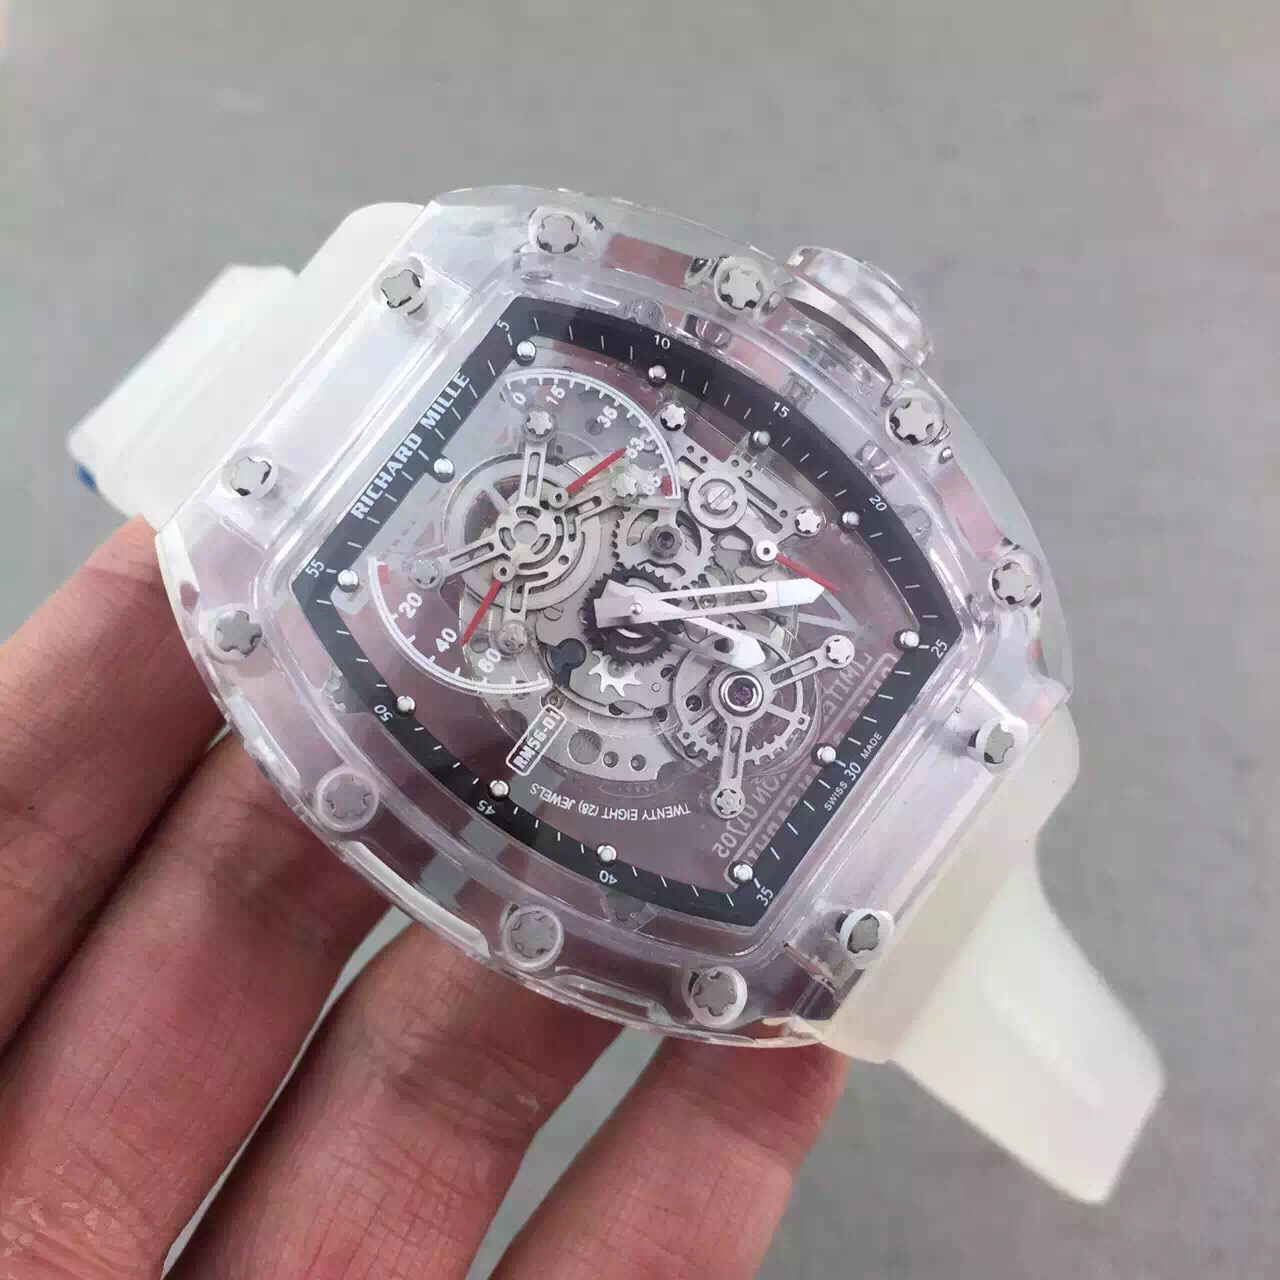  4、这款高仿手表值多少钱？ 